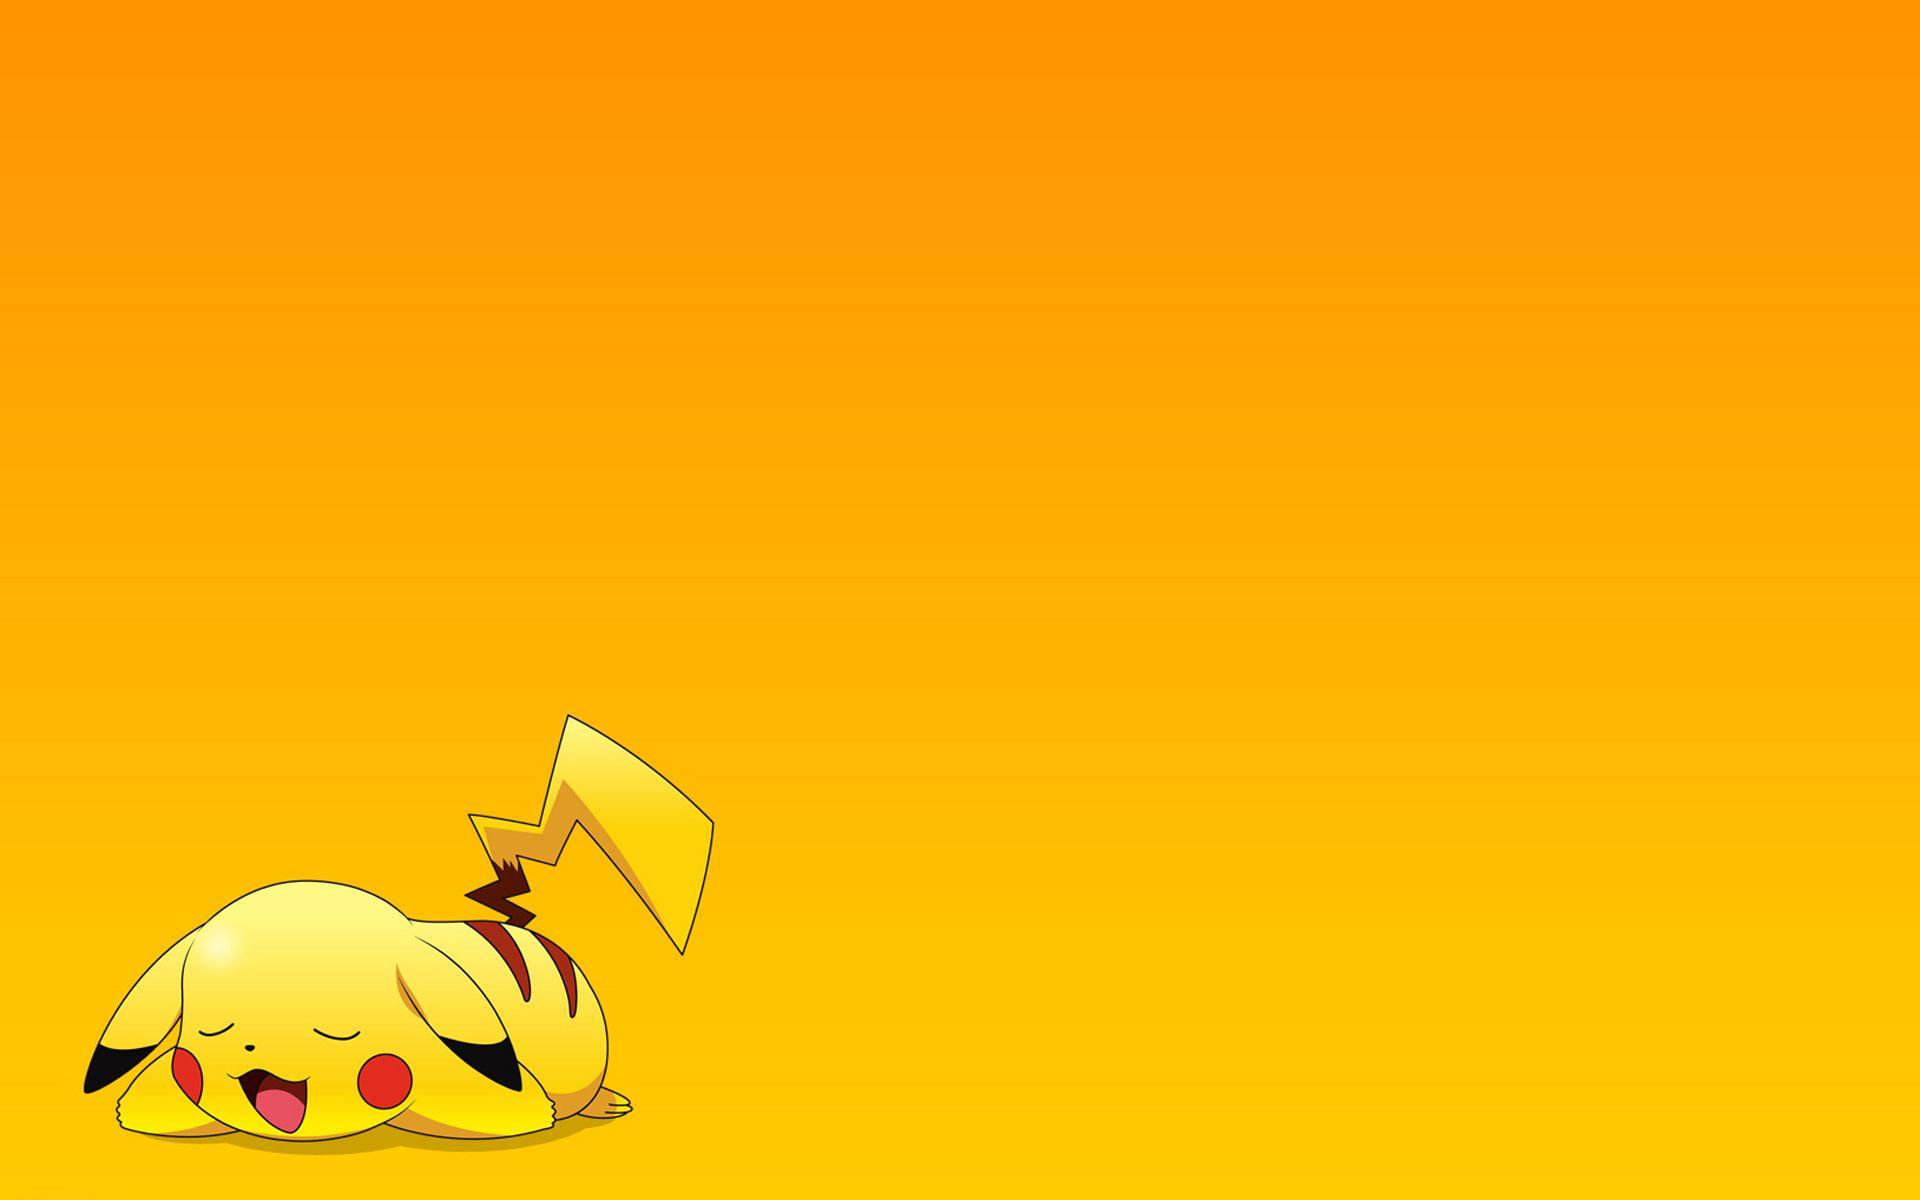 Pikachu is tired. Creative Pokemon art illustration. Cartoon